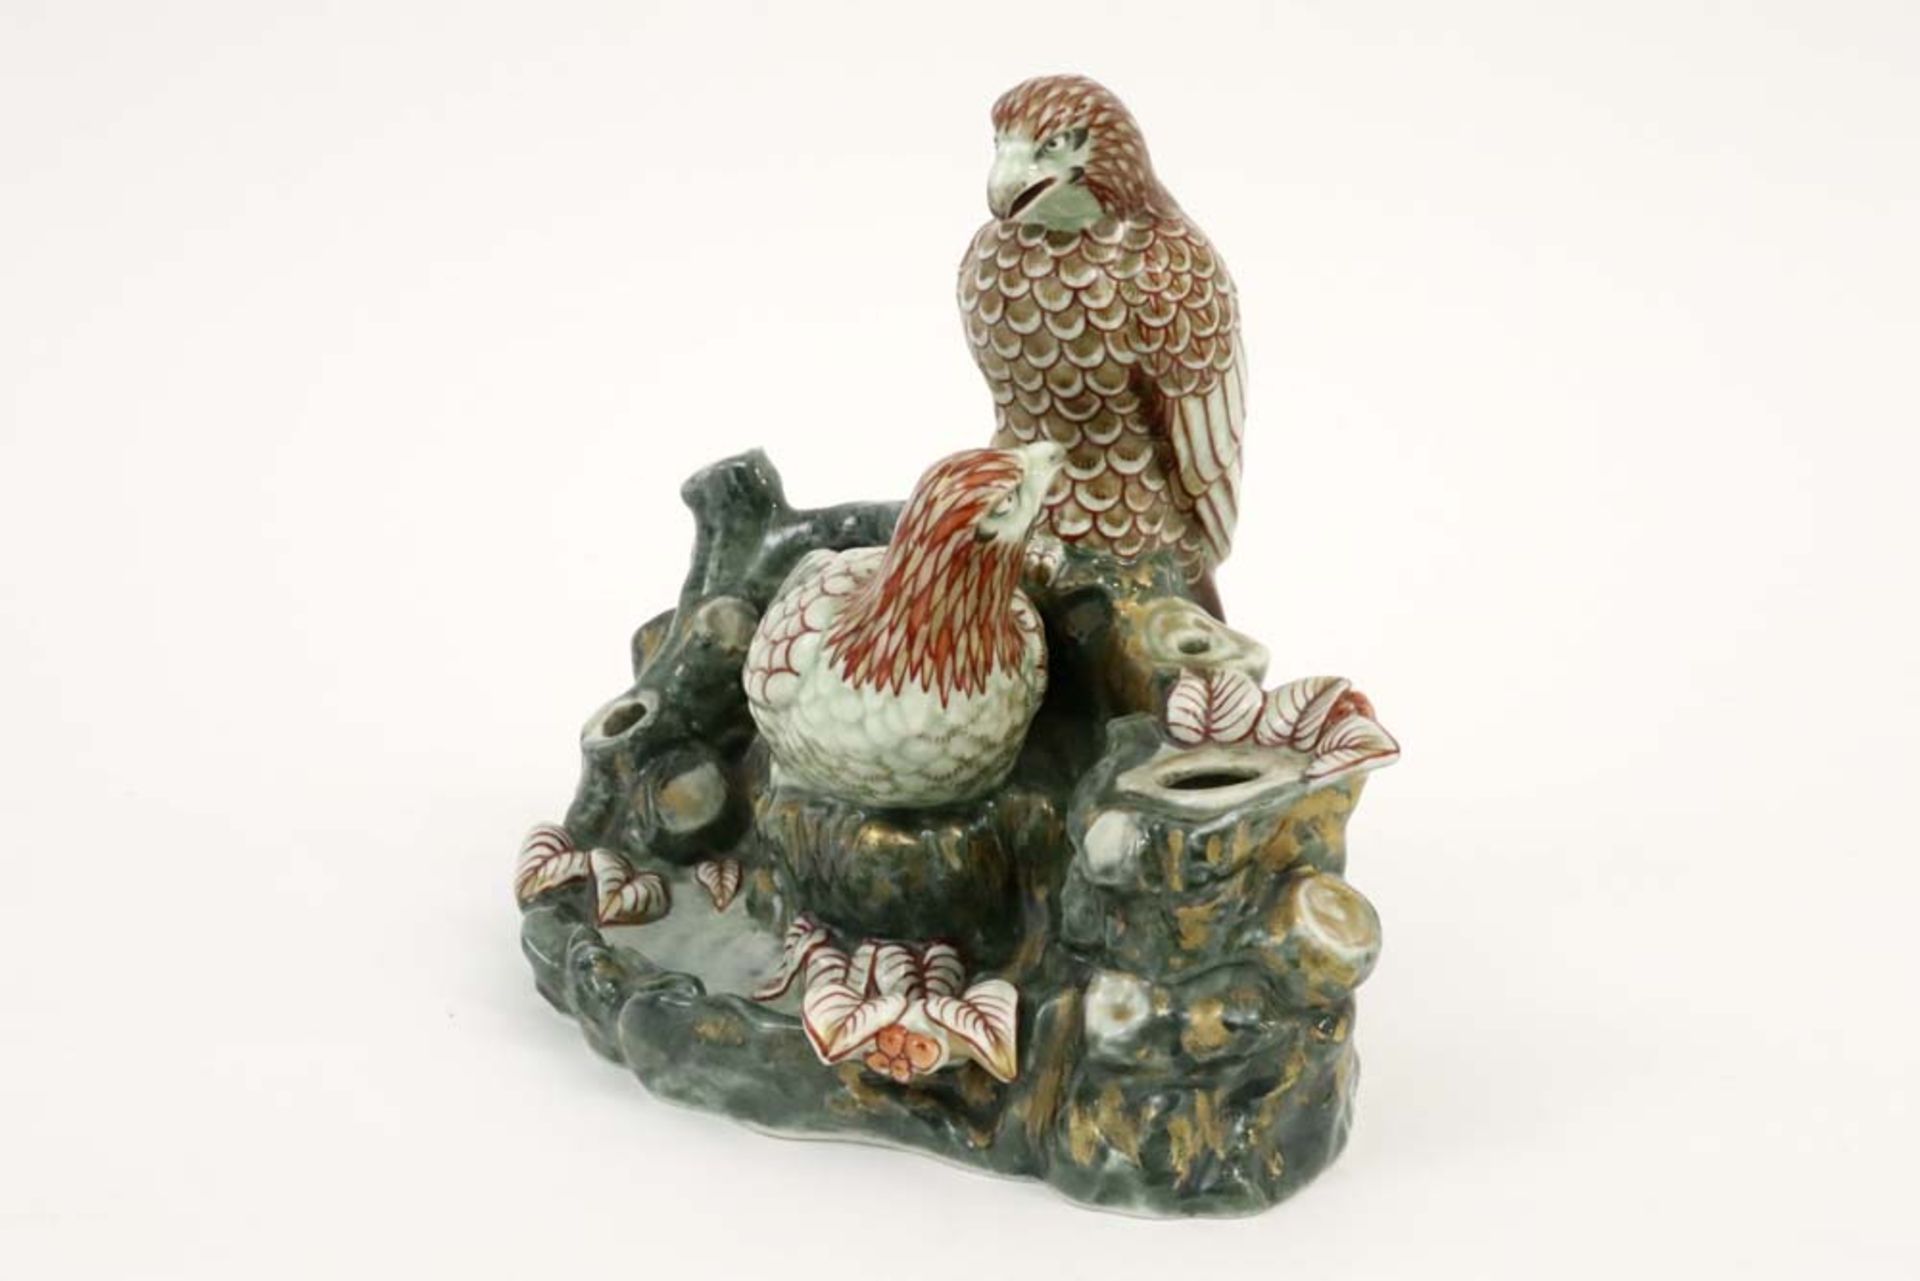 Japanese ink-stand with two eagles in porcelain || Japans inktstel met twee arenden in porselein met - Bild 2 aus 5